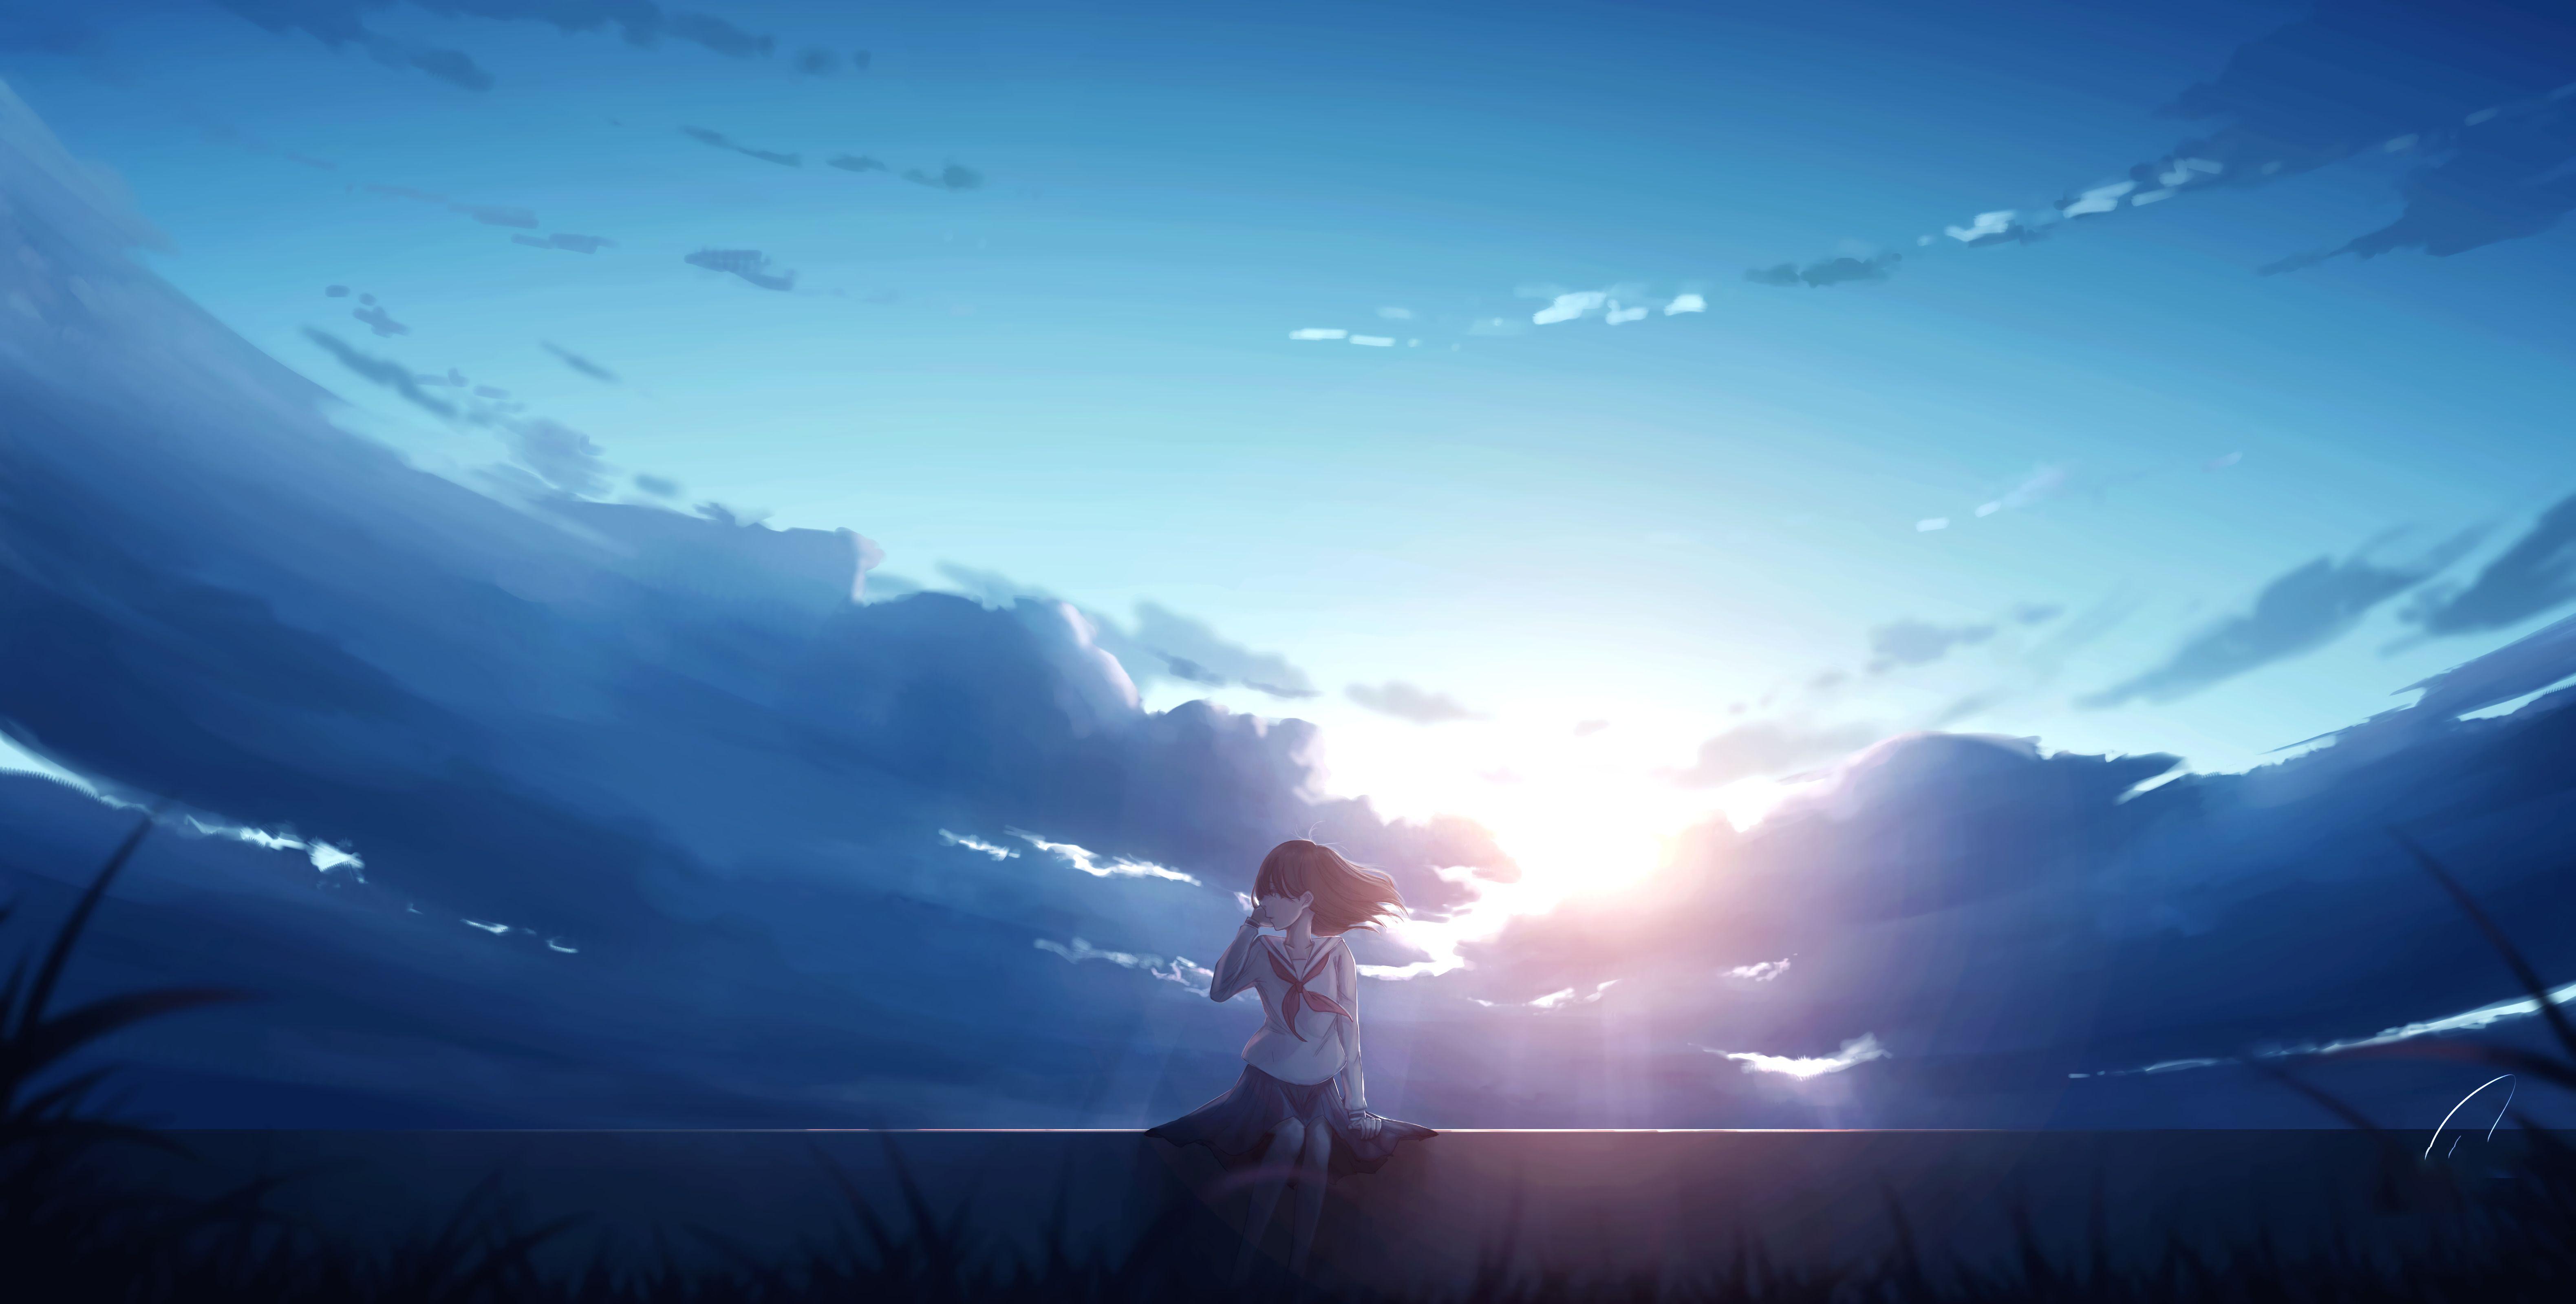 Anime Aesthetic Purple Sky Raining Night GIF  GIFDBcom